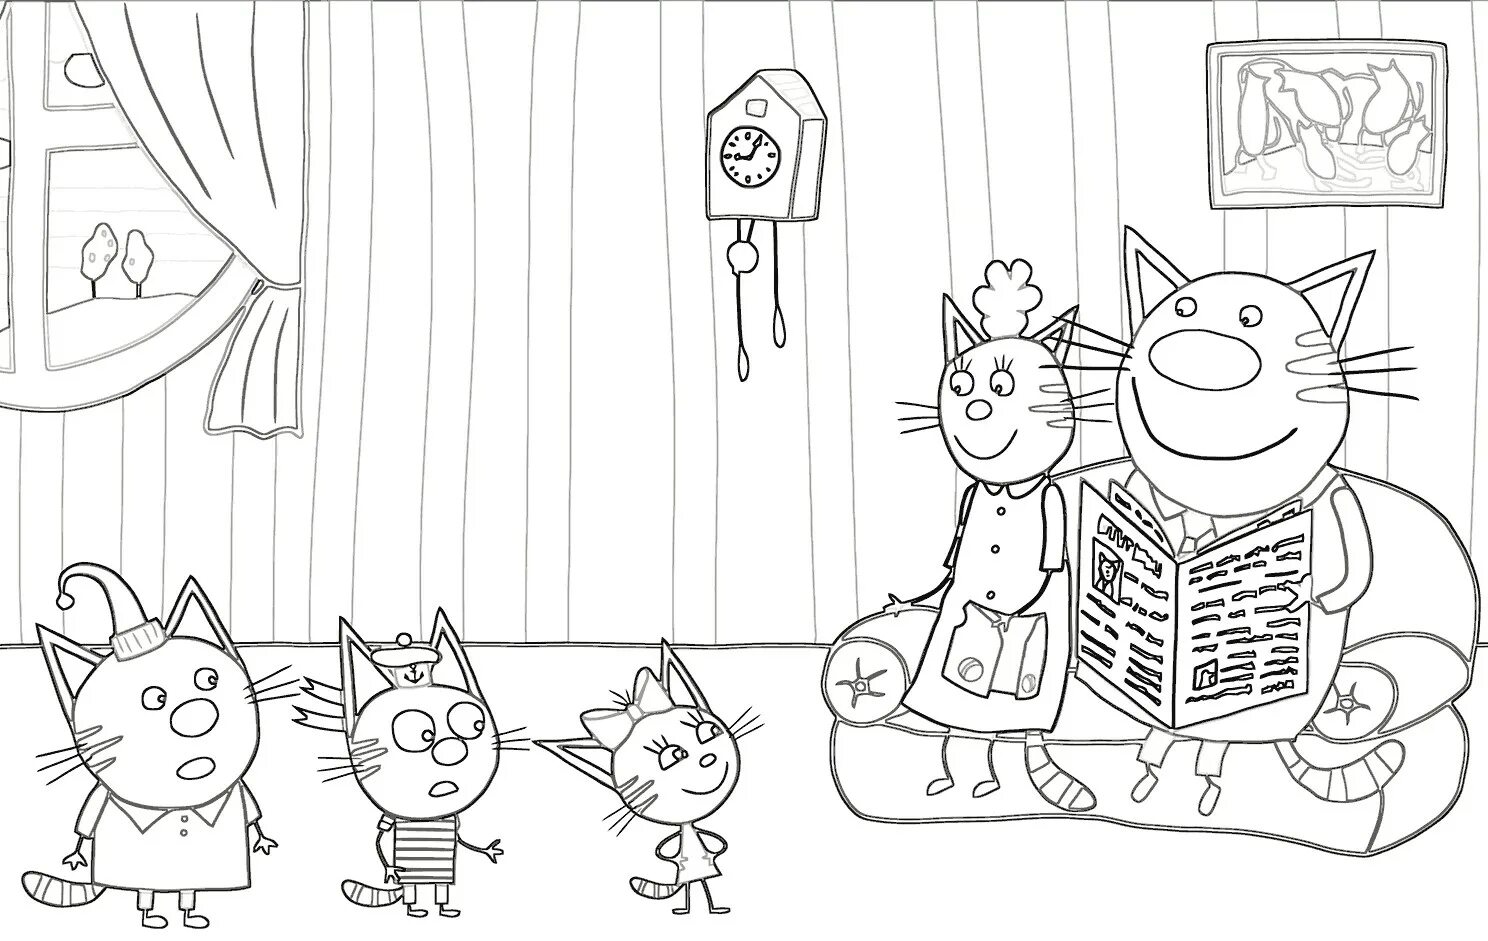 Three cats cartoon #5